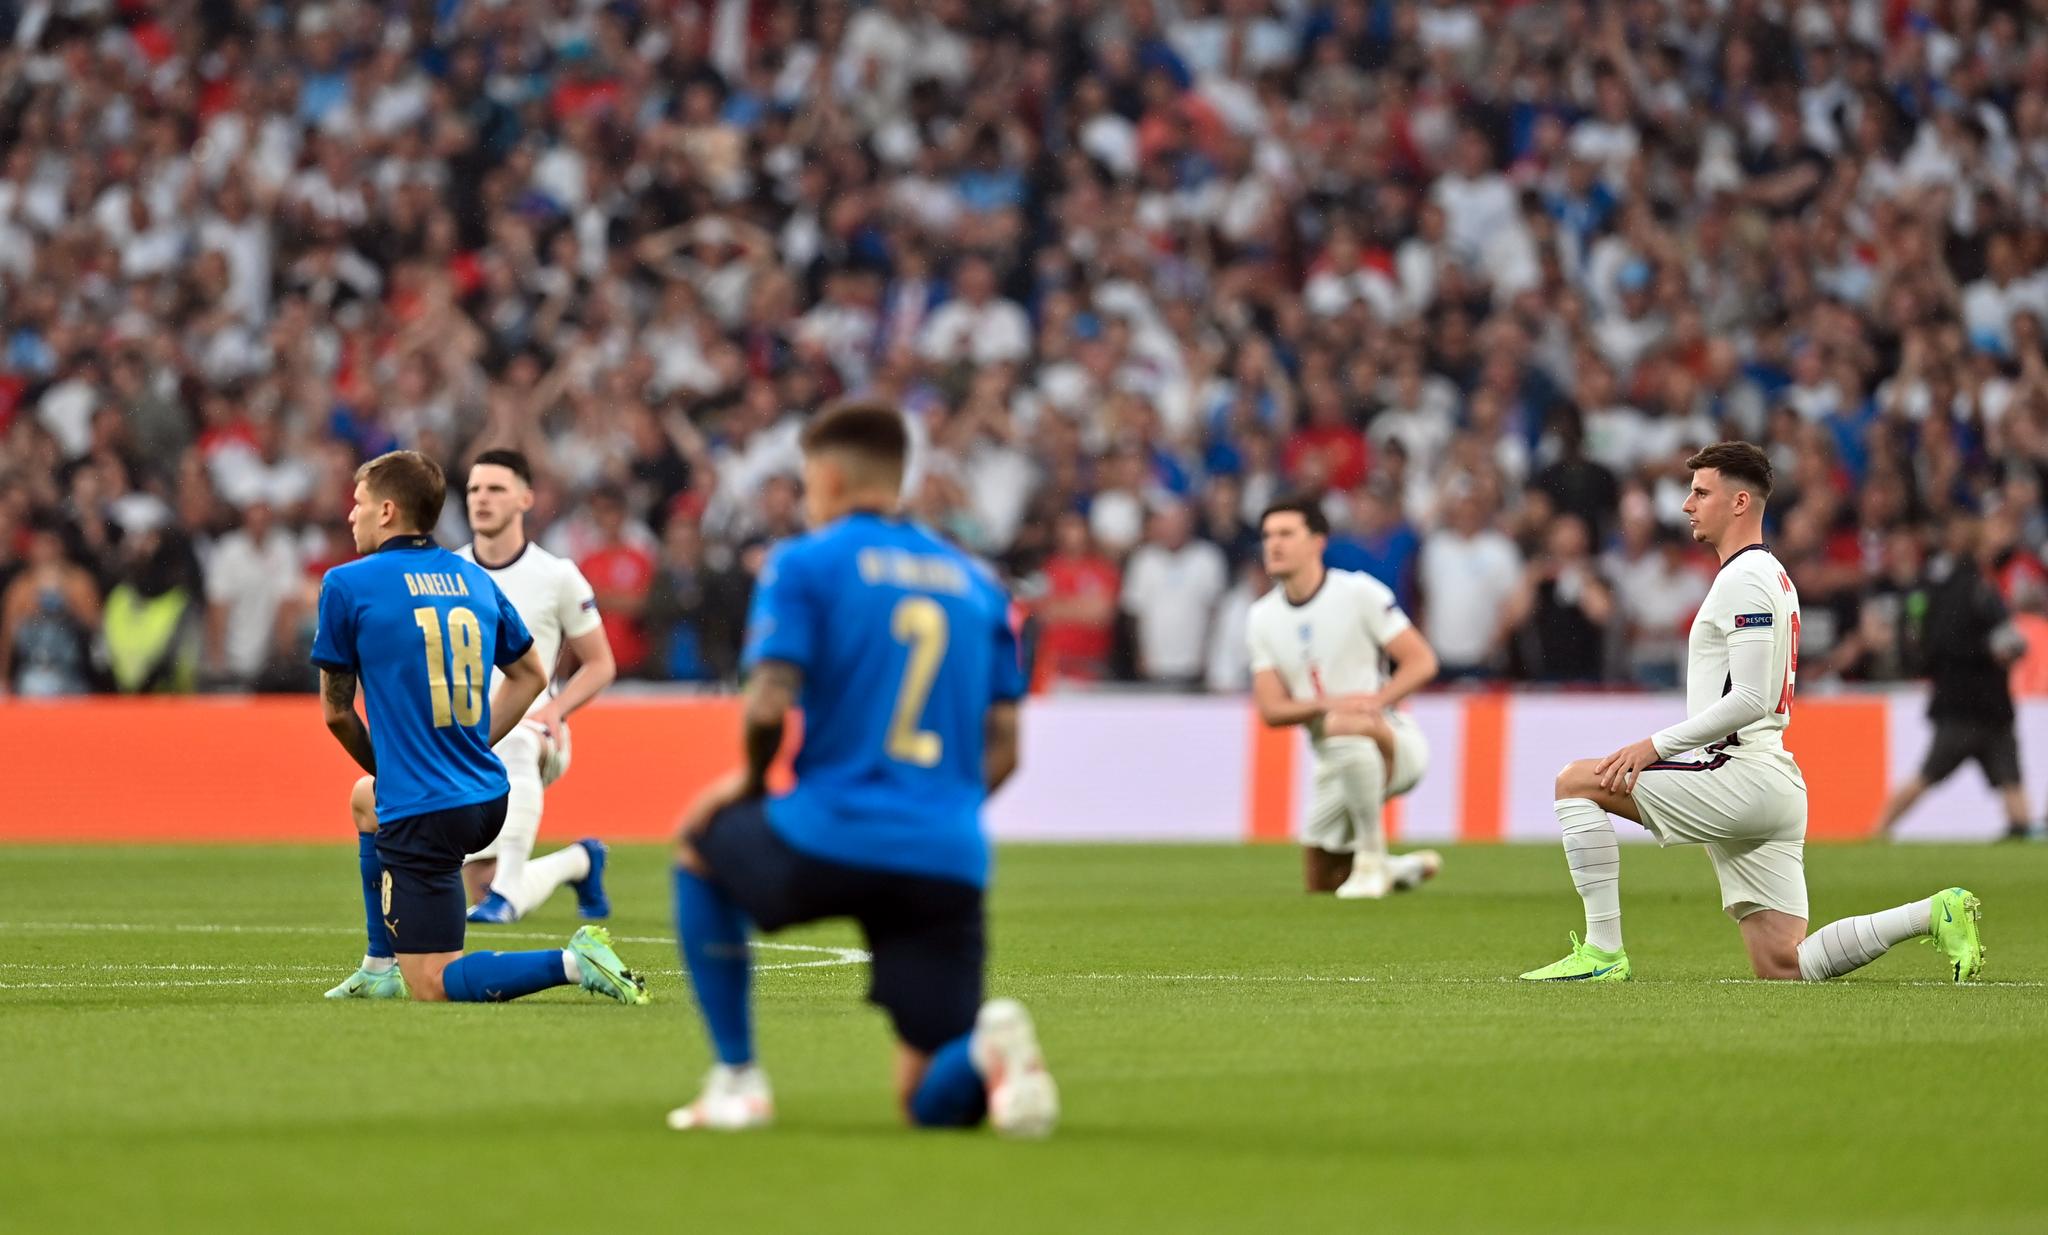 England kneler i forkant av finalen mot Italia. Markeringen startet i USA med at den amerikanske fotballspilleren Colin Kaepernick knelte i forkant av en kamp i 2016. Senere er det blitt et fremtredende symbol i sport og under demonstrasjoner. 